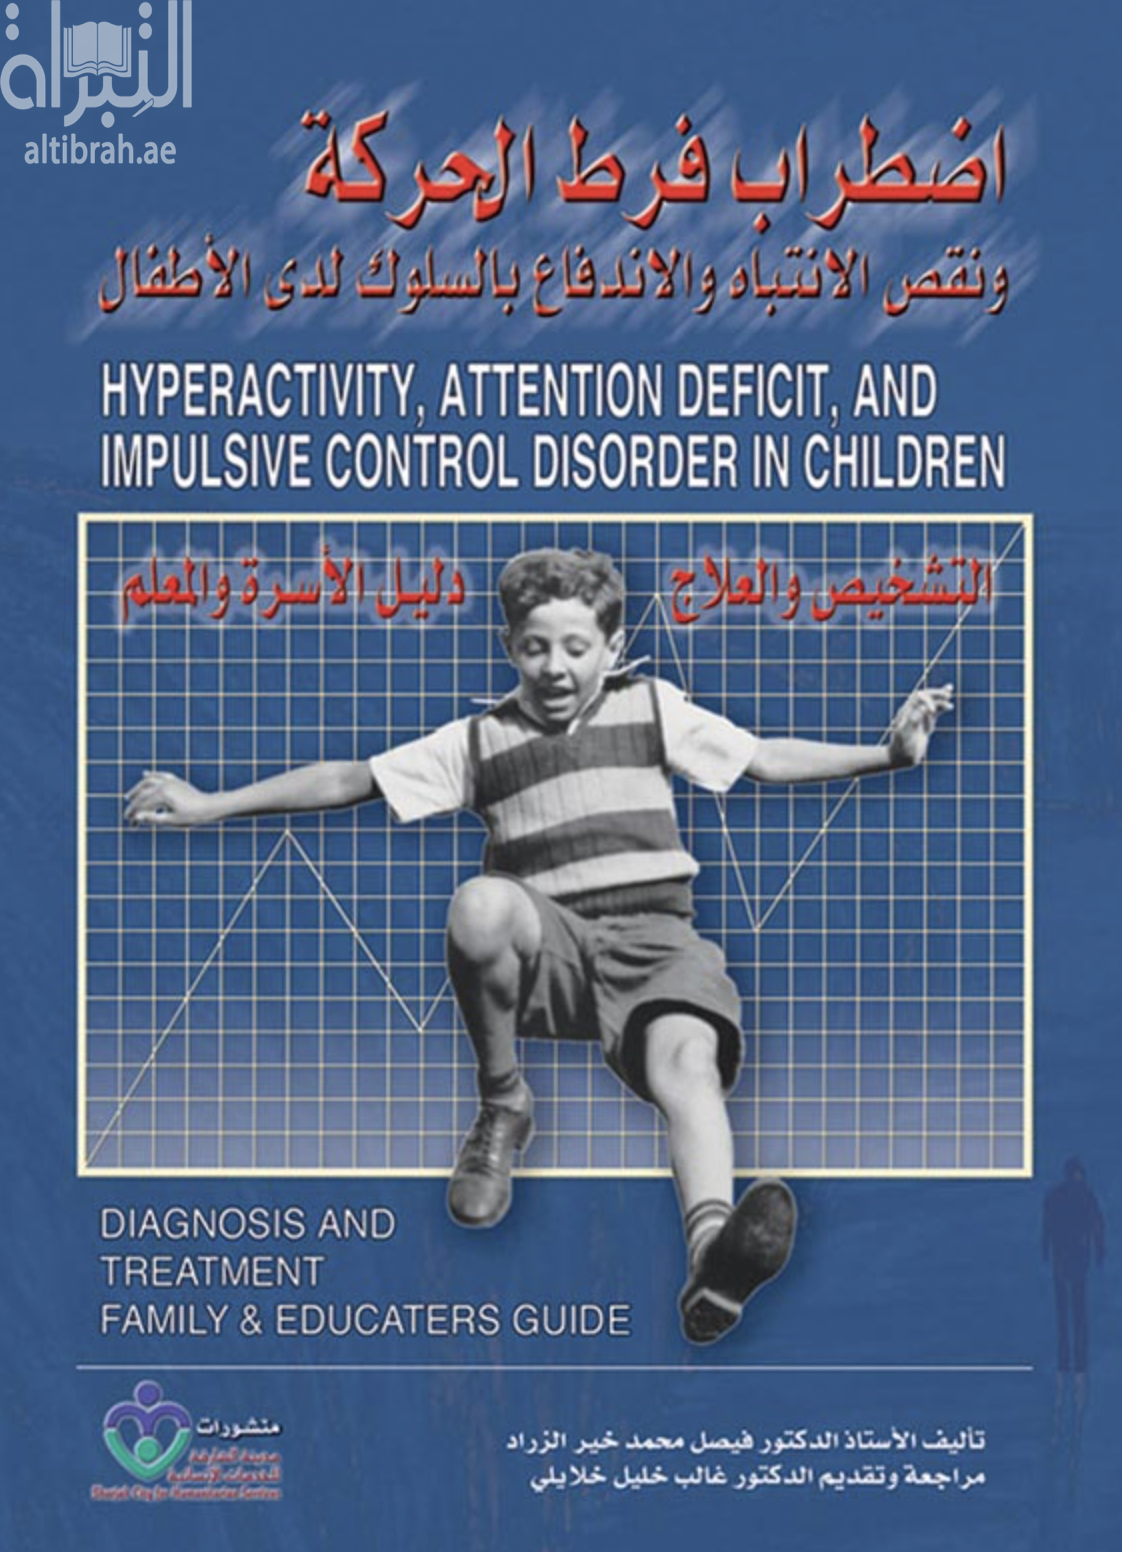 غلاف كتاب اضطراب فرط الحركة ونقص الانتباه والاندفاع بالسلوك لدى الأطفال